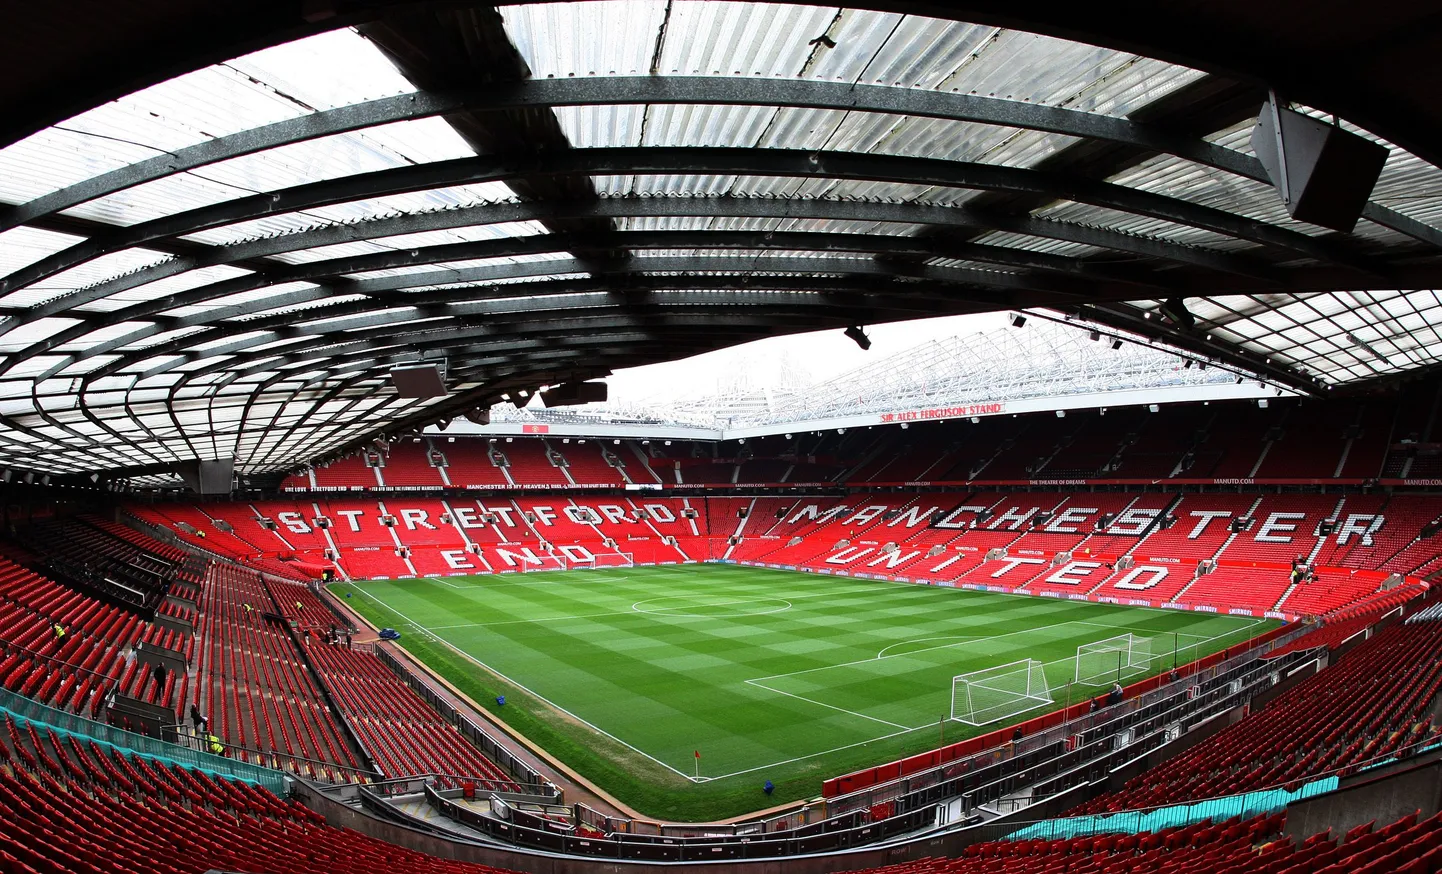 Manchester Unitedi kodustaadion Old Trafford, kus mängivad klubi staarid. Oliver Jürgens on oma oskusi näitamas ka just ManU klubi juures.